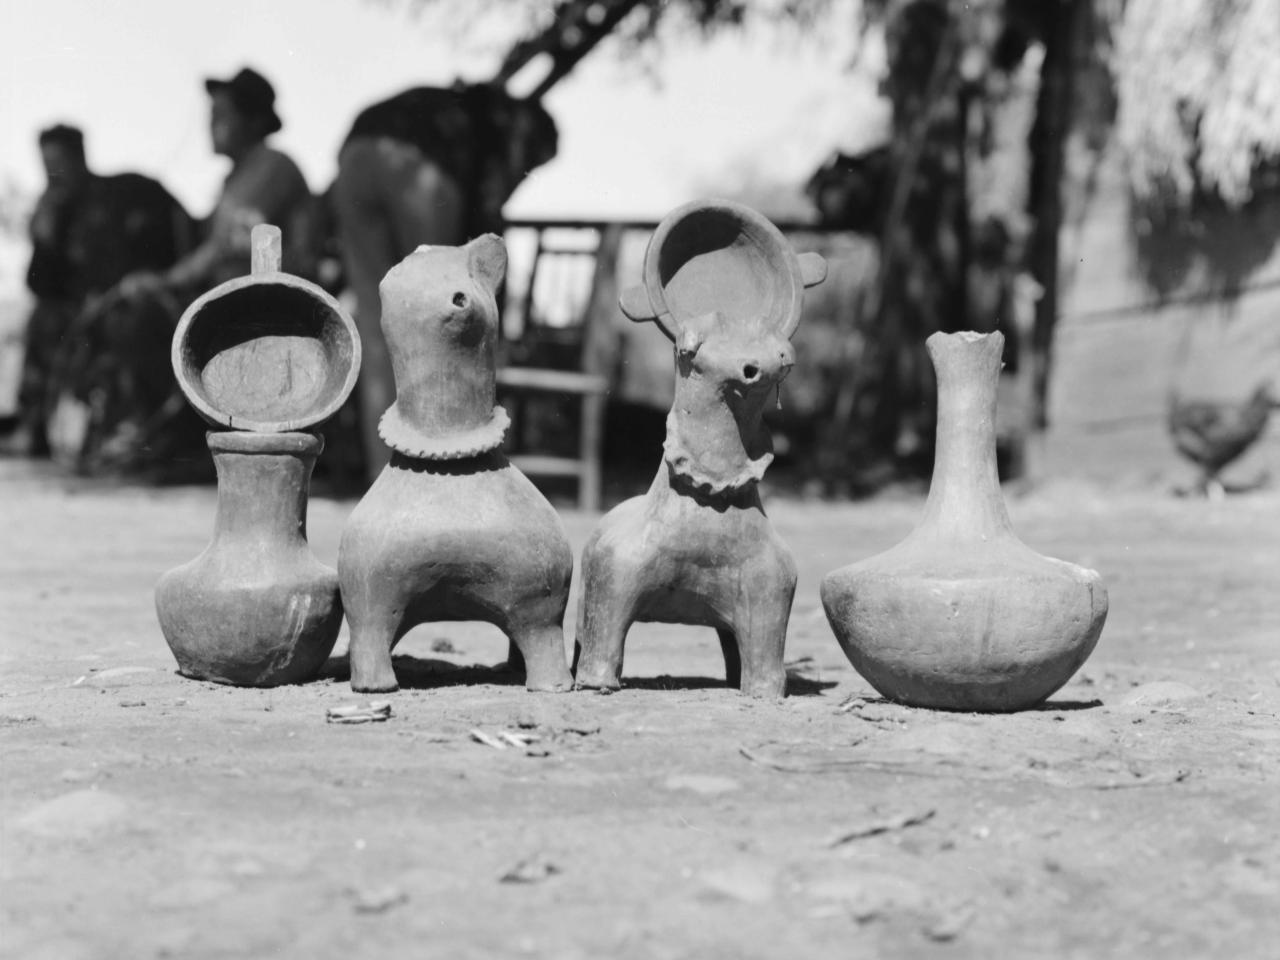 figuras de cerámica, todo trabajos de artesanía mapuche.